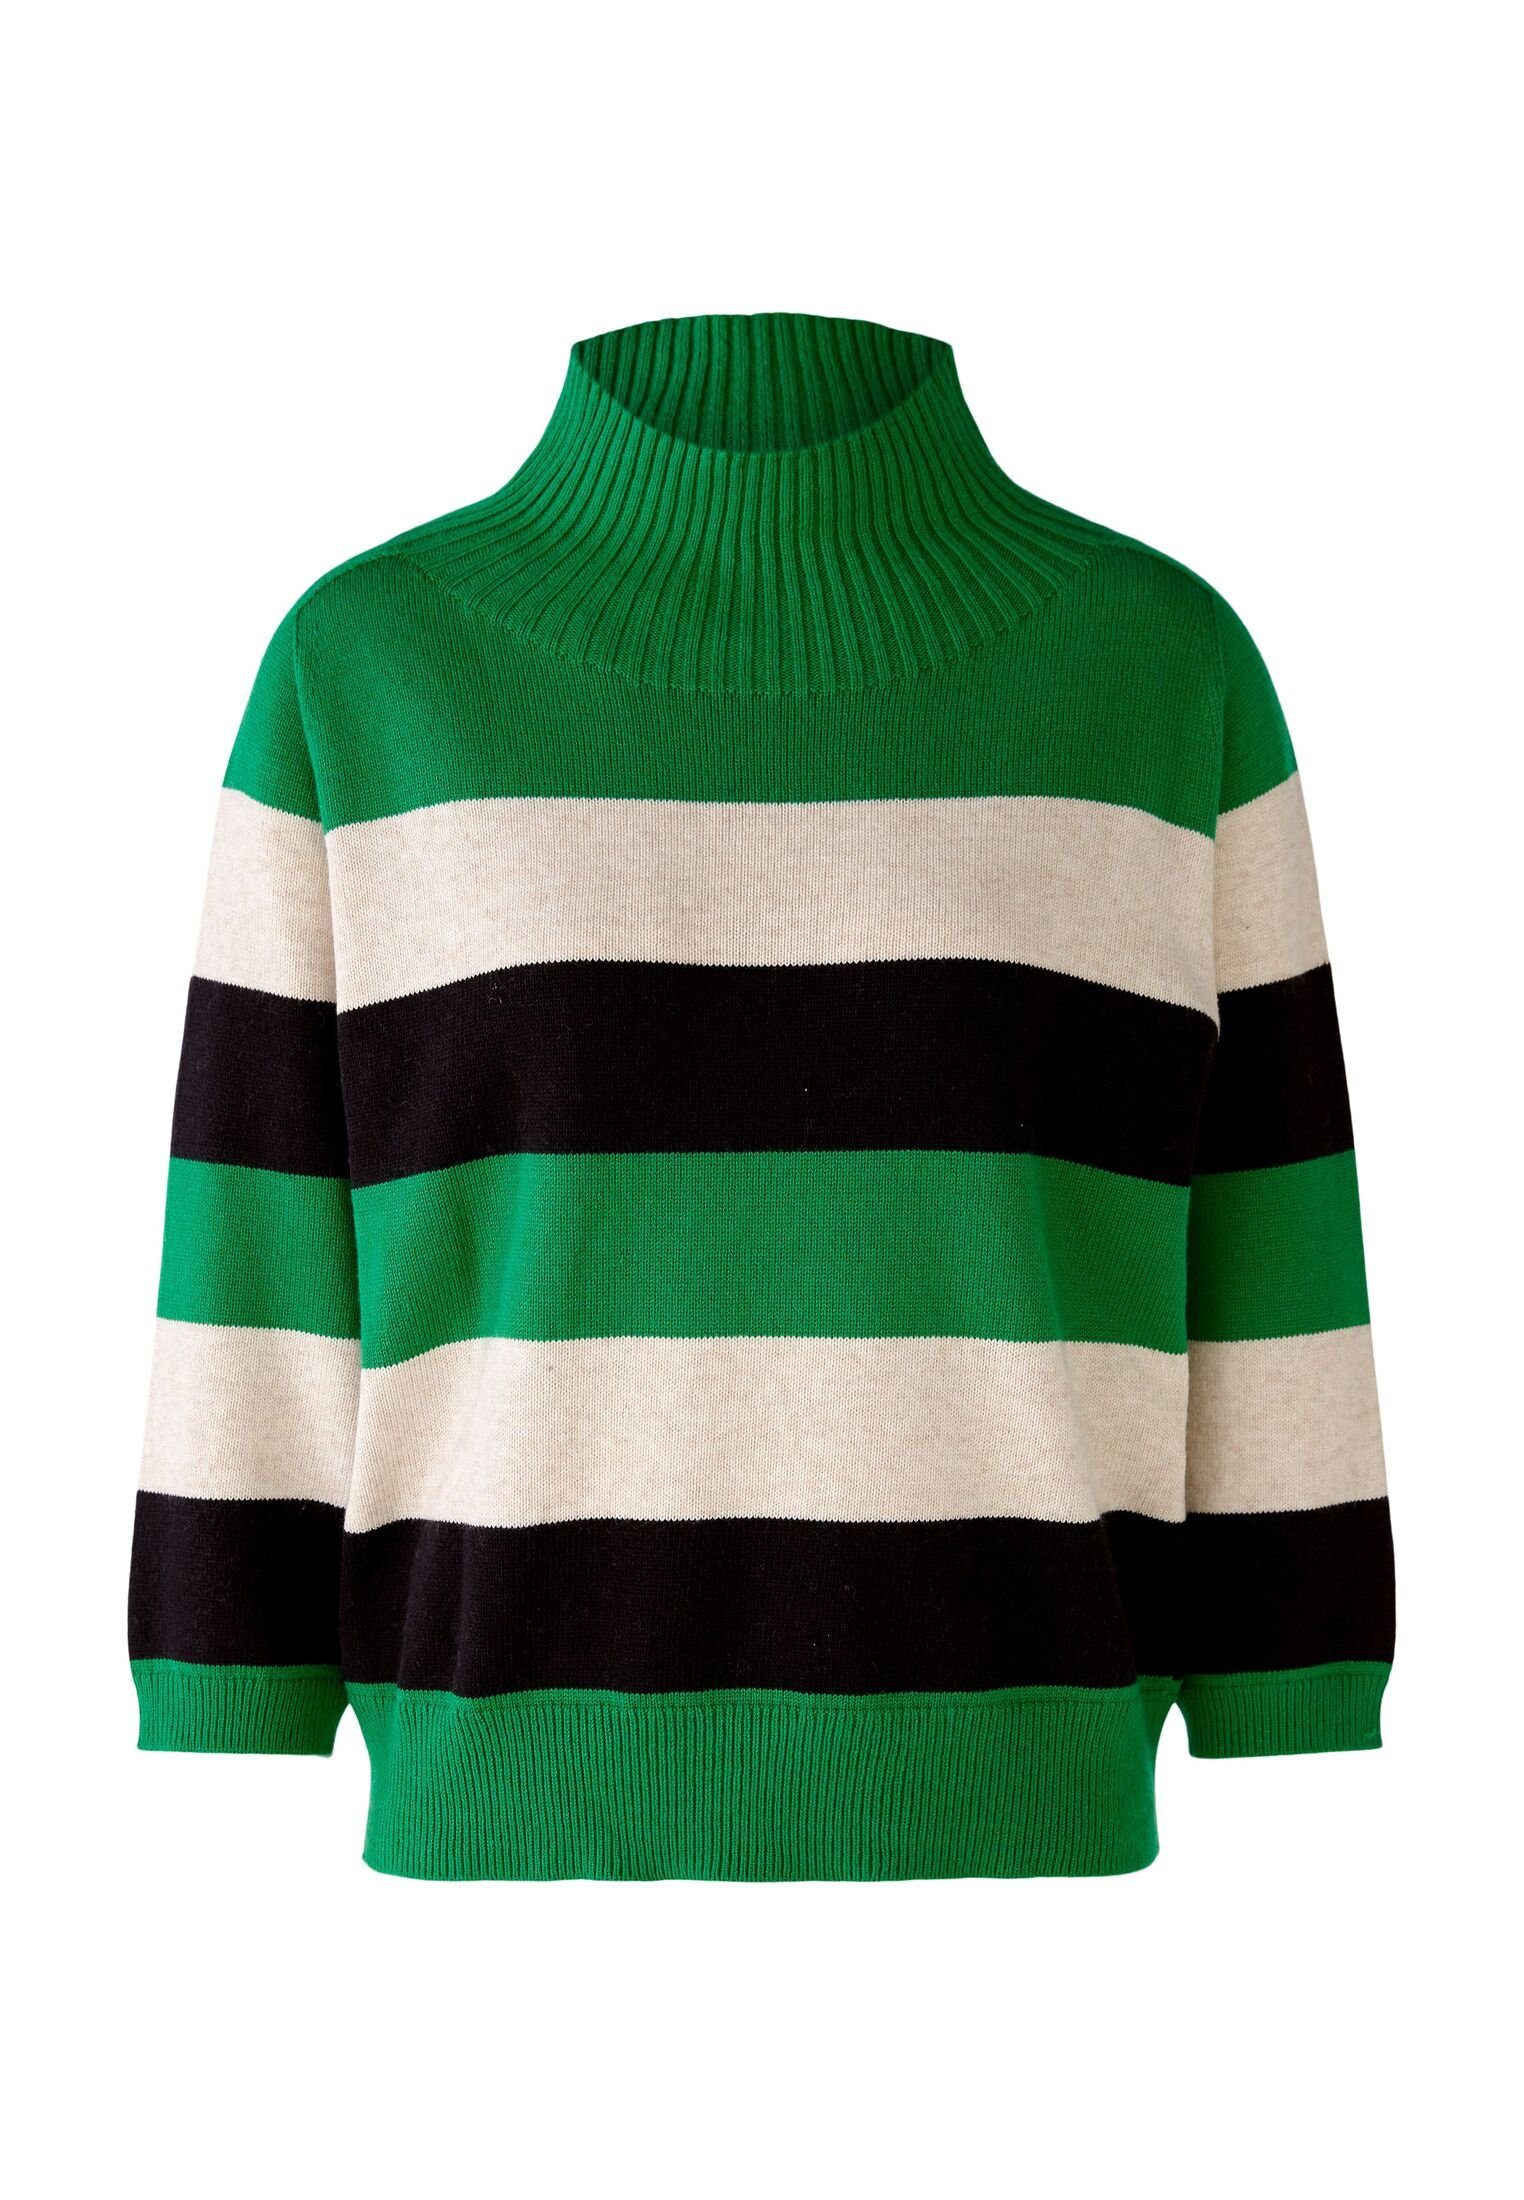 Oui Strickpullover Pullover mit Baumwoll- und Viskoseanteil green grey